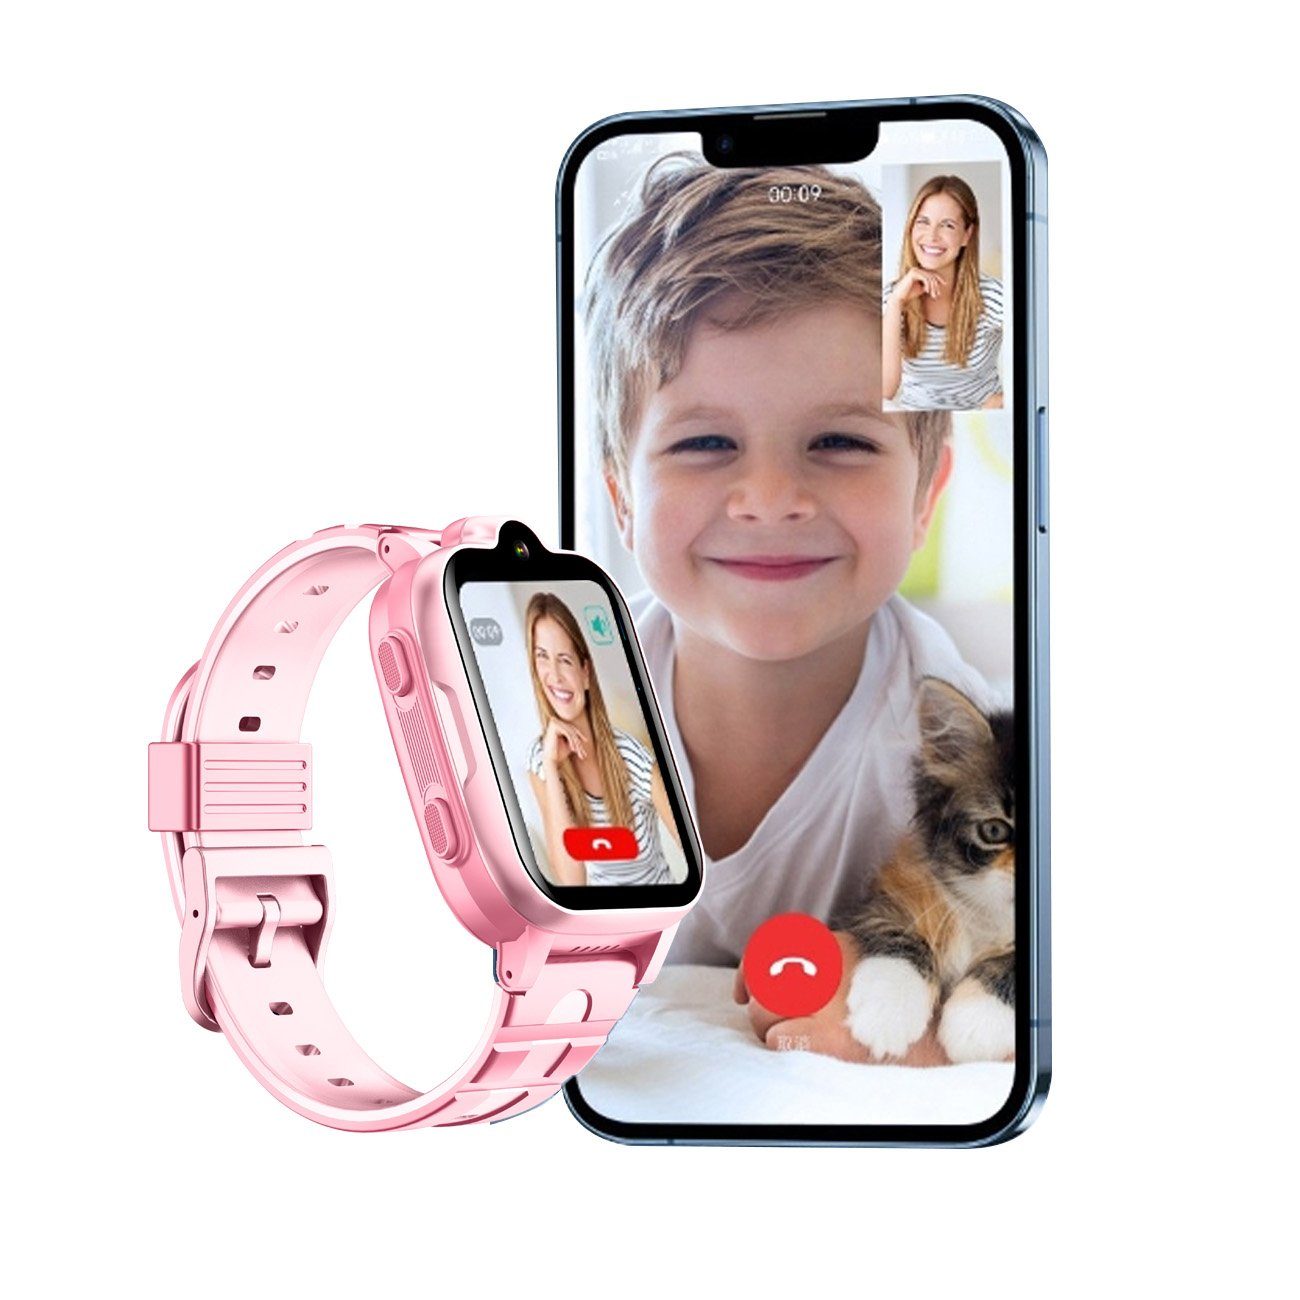 Powerwill Kinder Smartwatch, mit GPS und Telefonfunktionen 4G Smartwatch Smartwatch, Kinderuhr mit Videoanruffunktion Wasserdicht, Geeignet für Jungen und Mädchen, Schüler 4G-Netzwerk